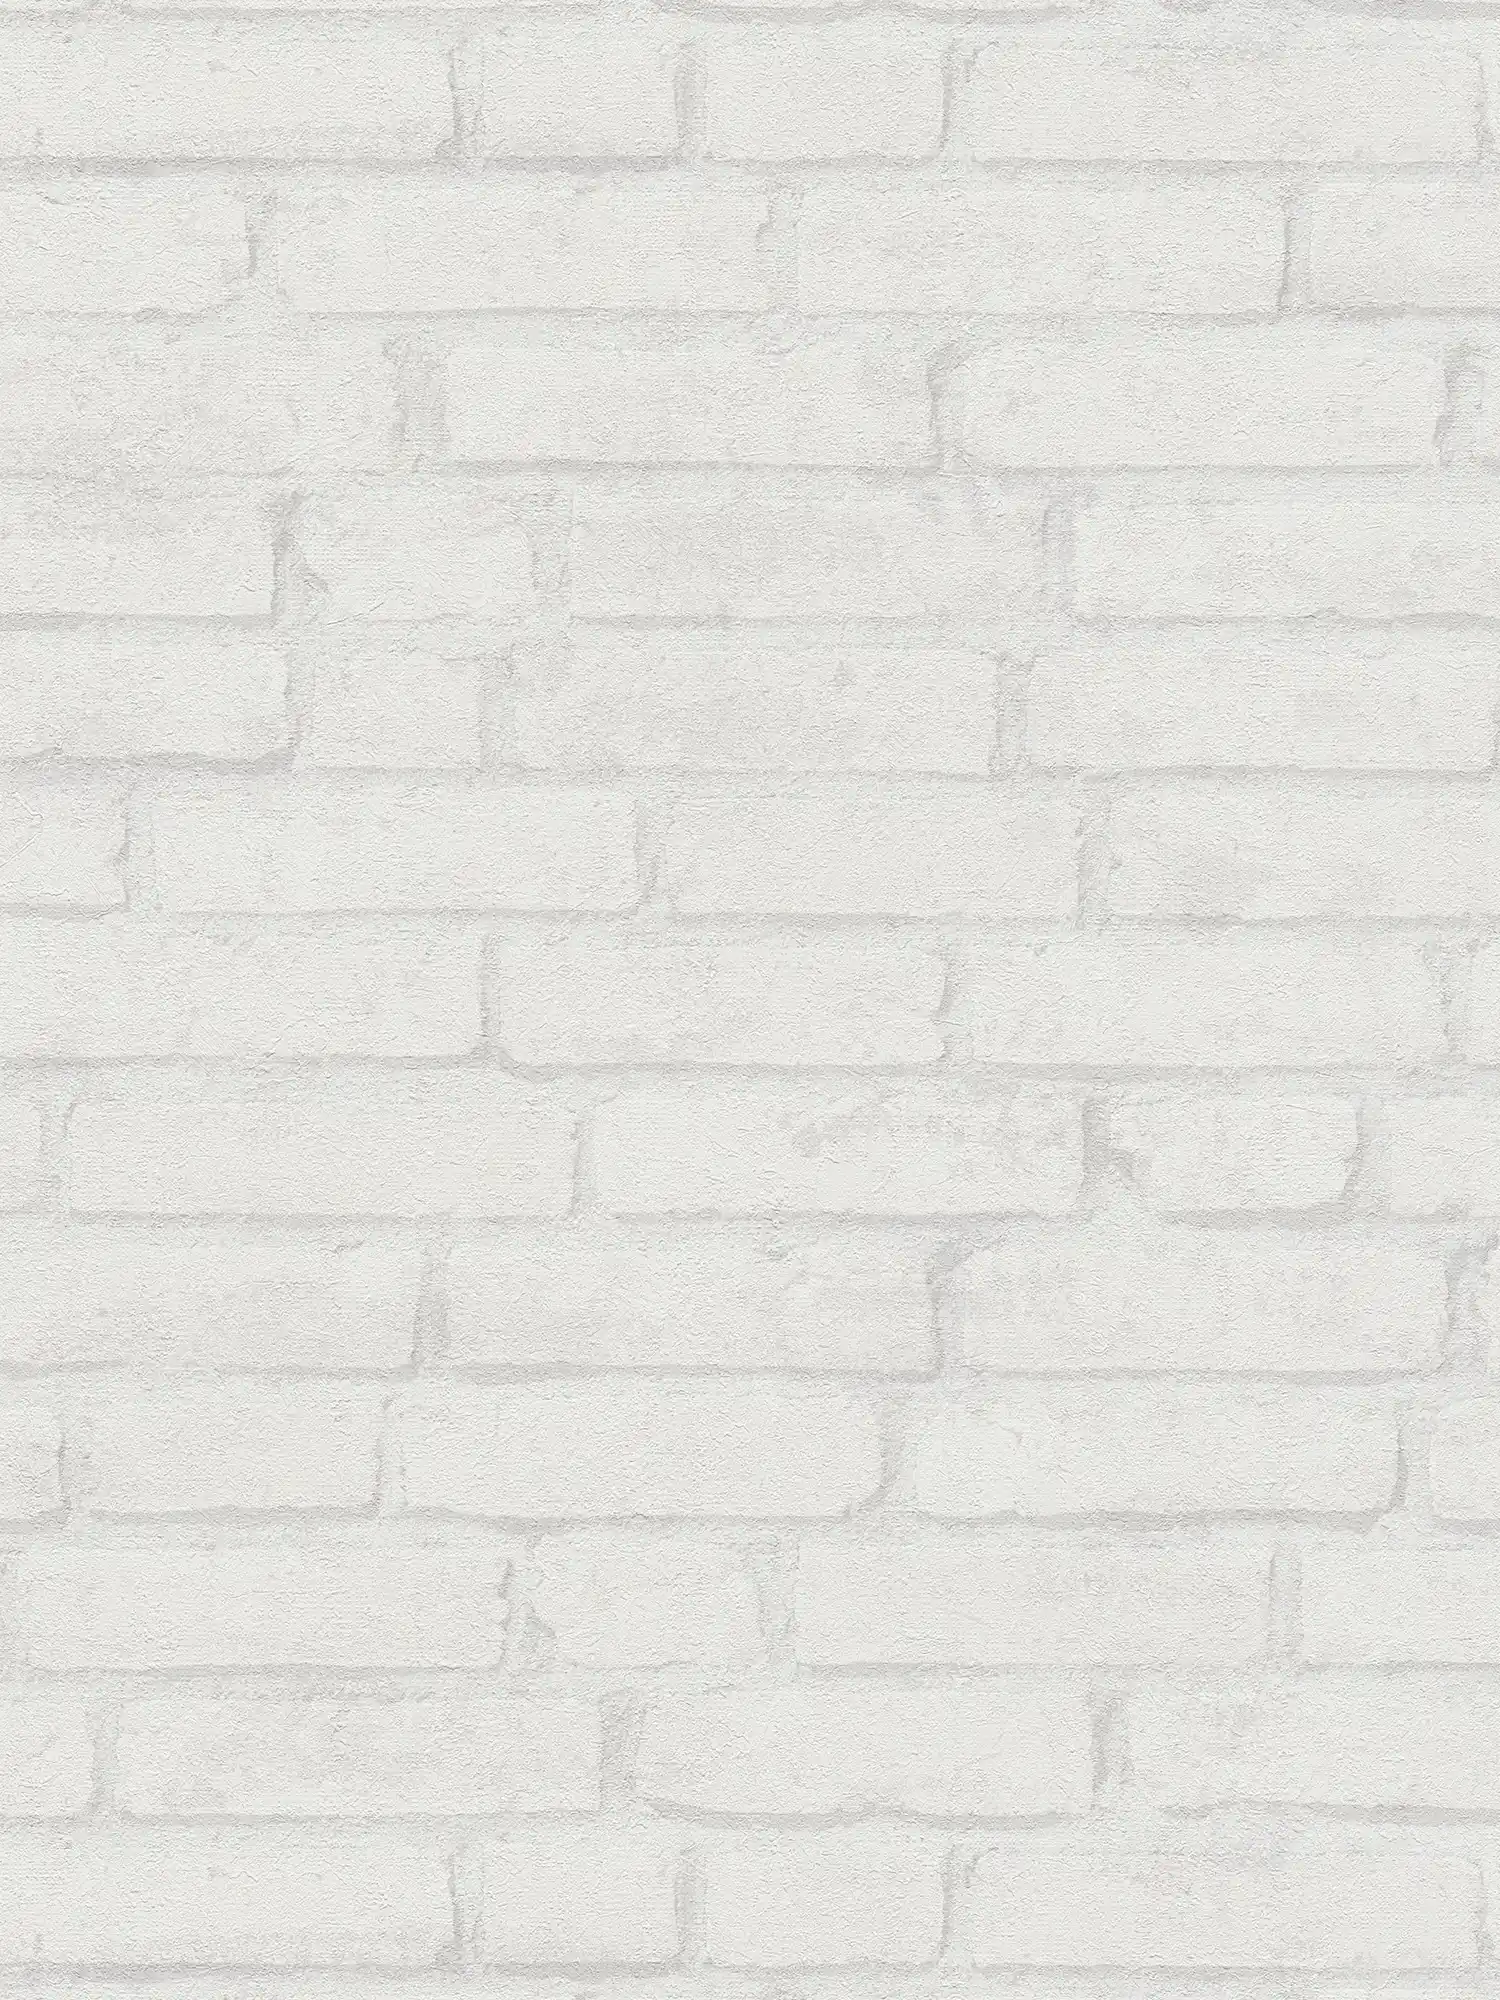 Helle Steintapete Ziegel-Muster im Industrial Design – Weiß, Grau
